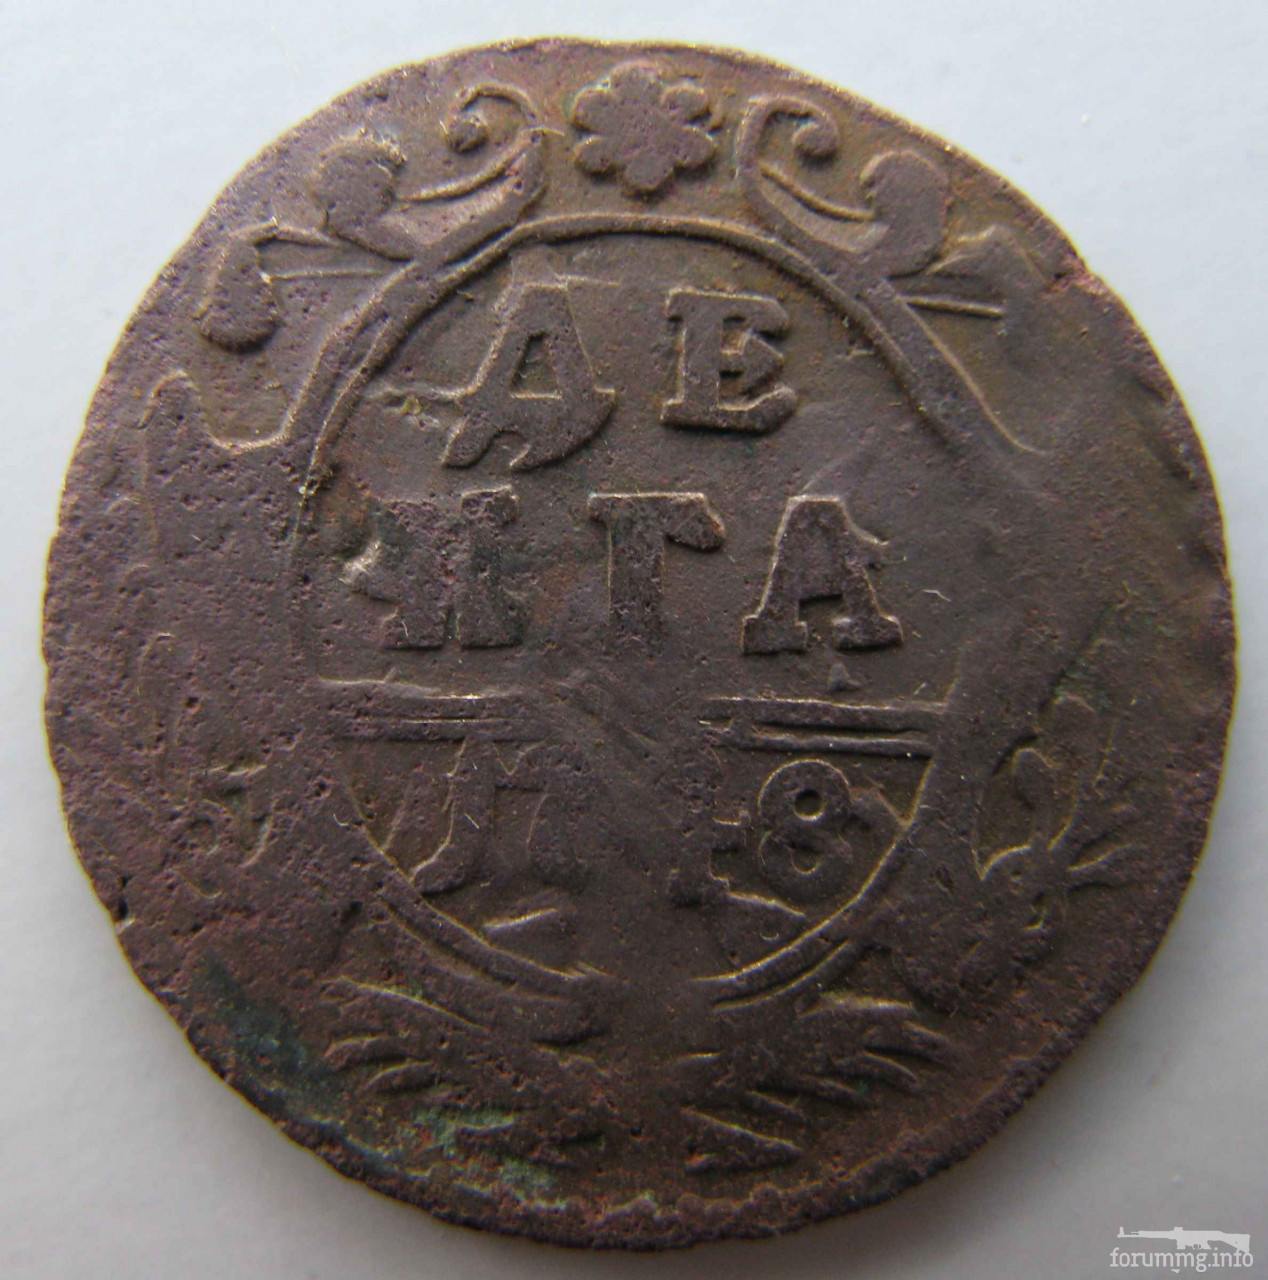 155249 - Статистика разновесов Деньги и Полушки периода 1730-54 гг. по монетным дворам.